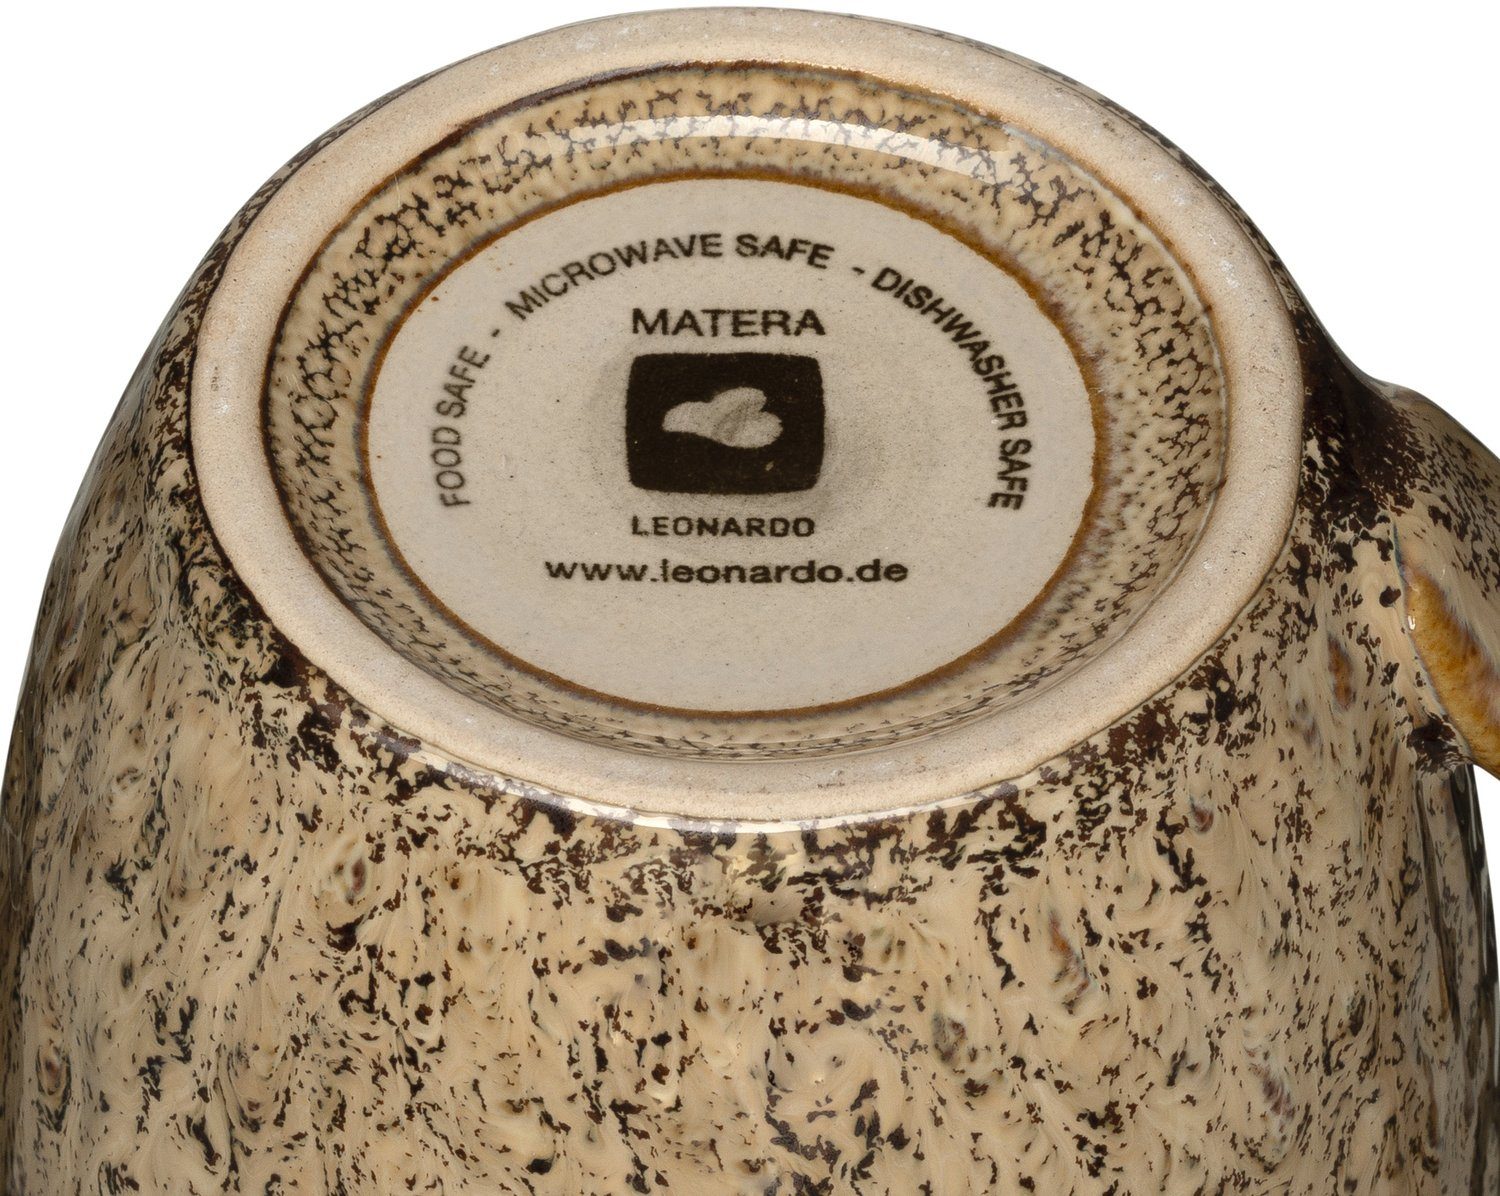 Matera, sand ml, Keramik, 6-teilig 430 Becher LEONARDO